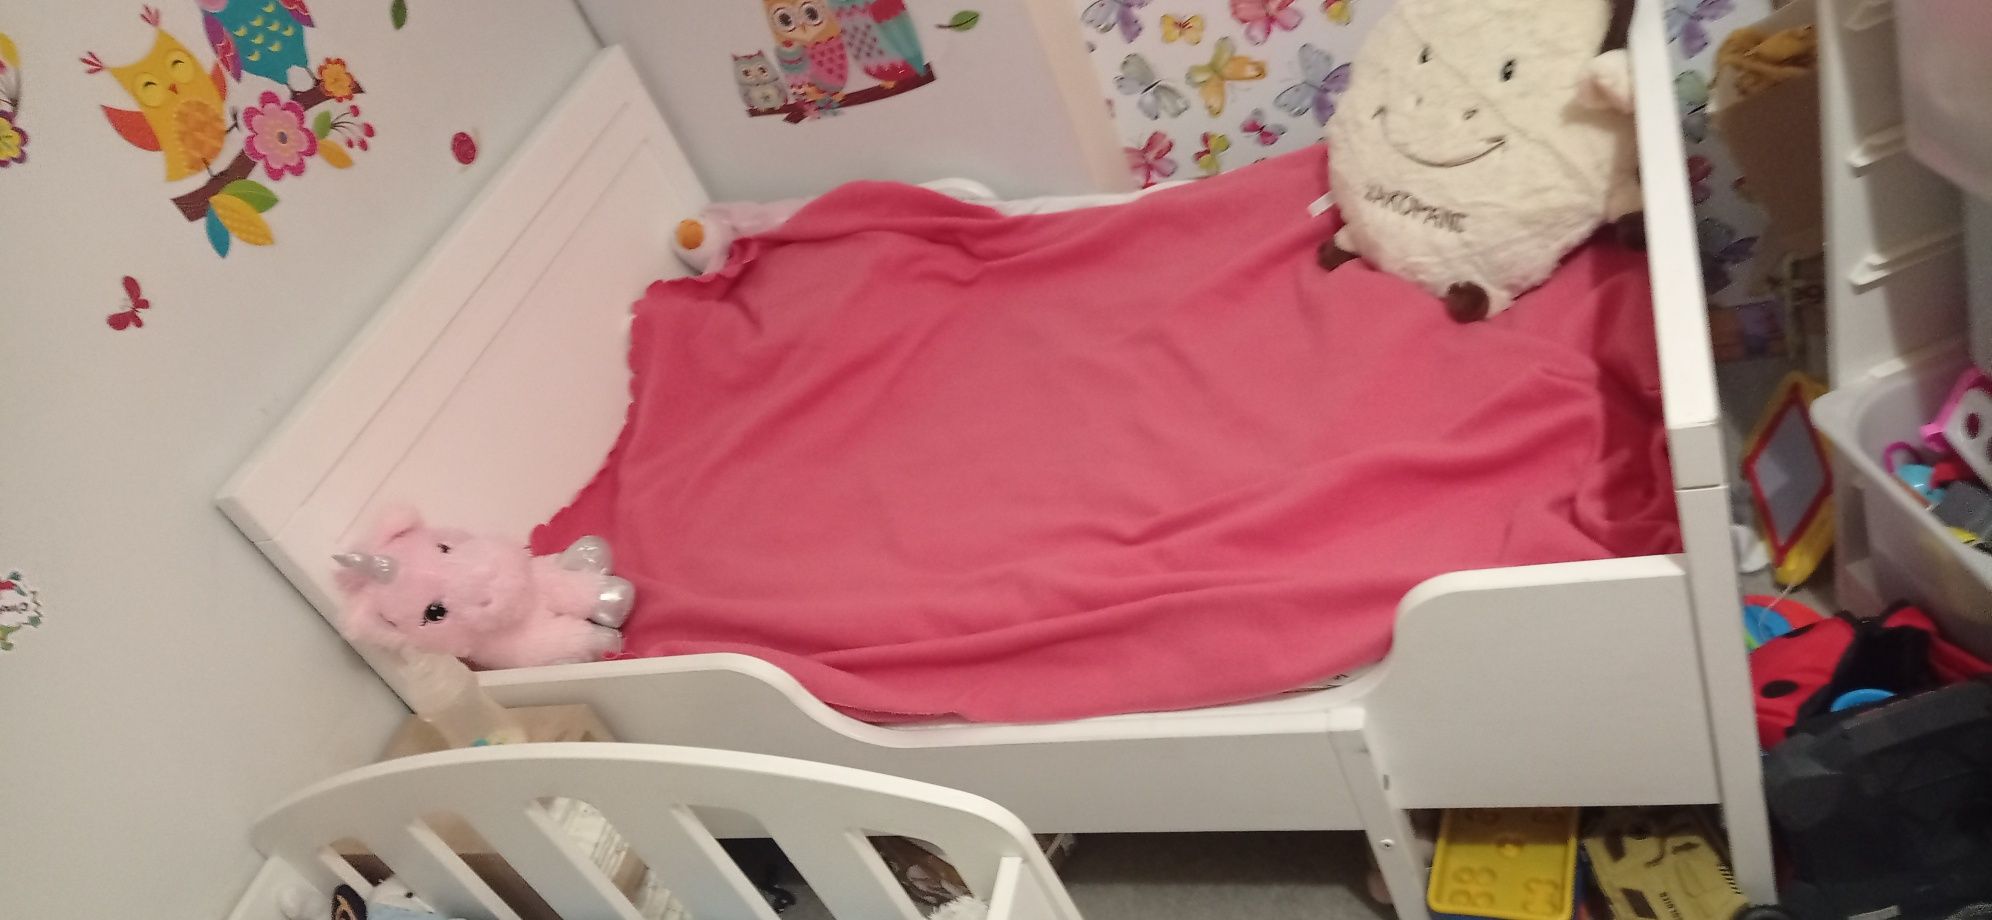 Łóżko rozsuwane dla dzieci